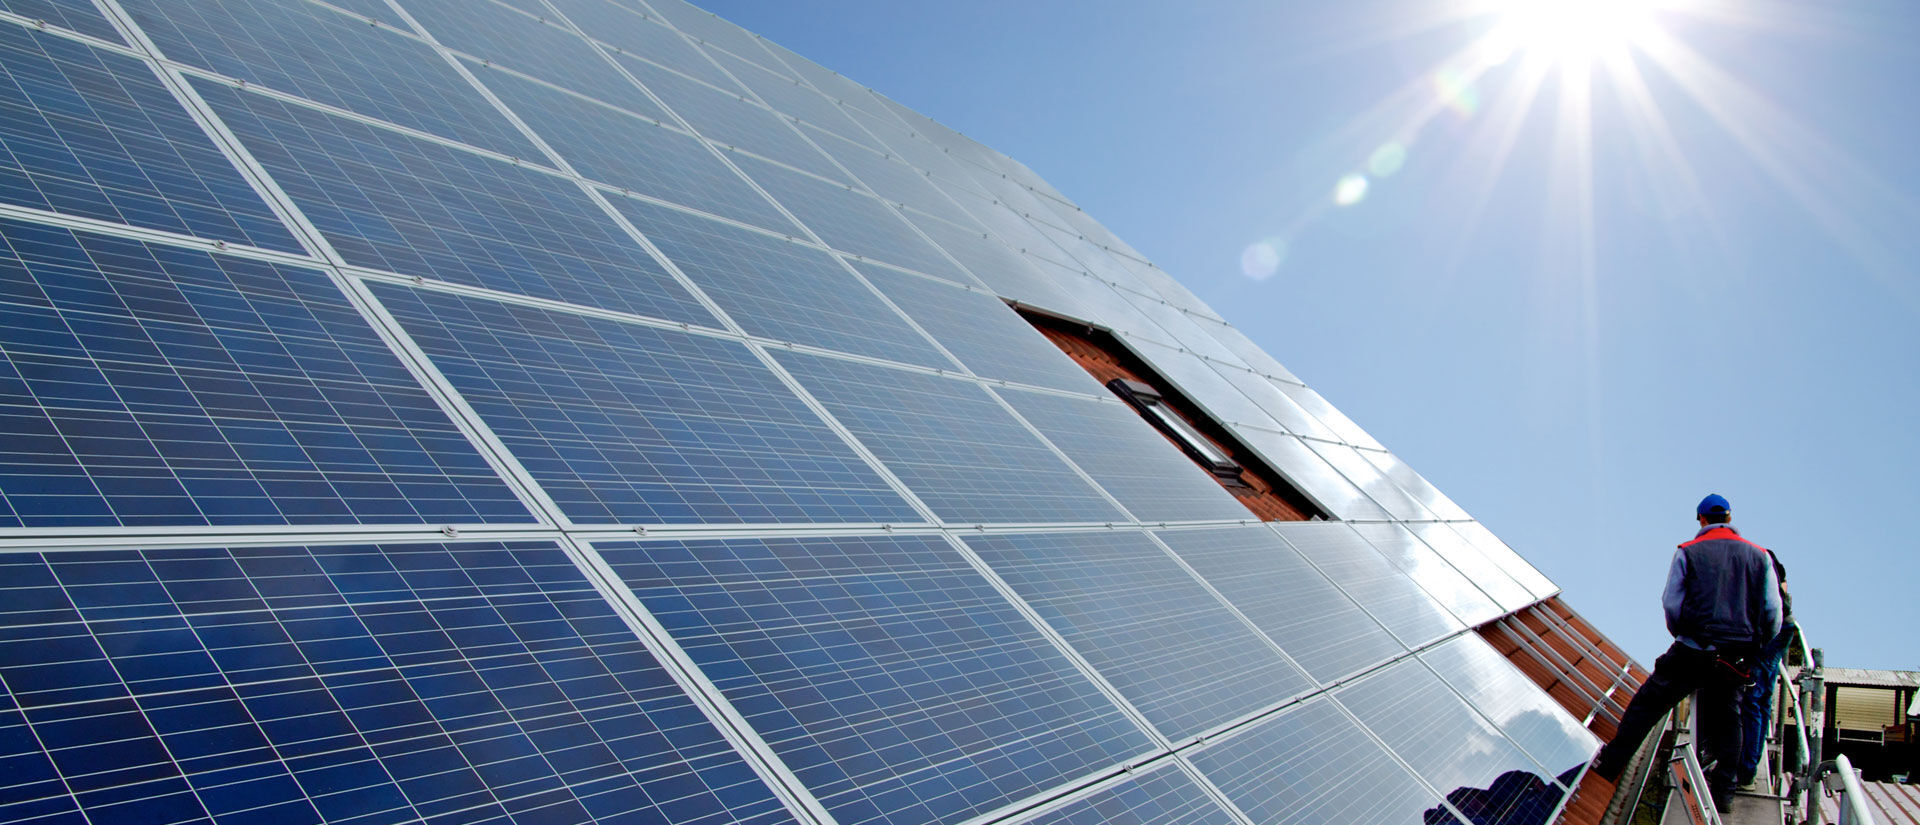 Photovoltaik aufs Dach - mit günstigem Kredit - jetzt